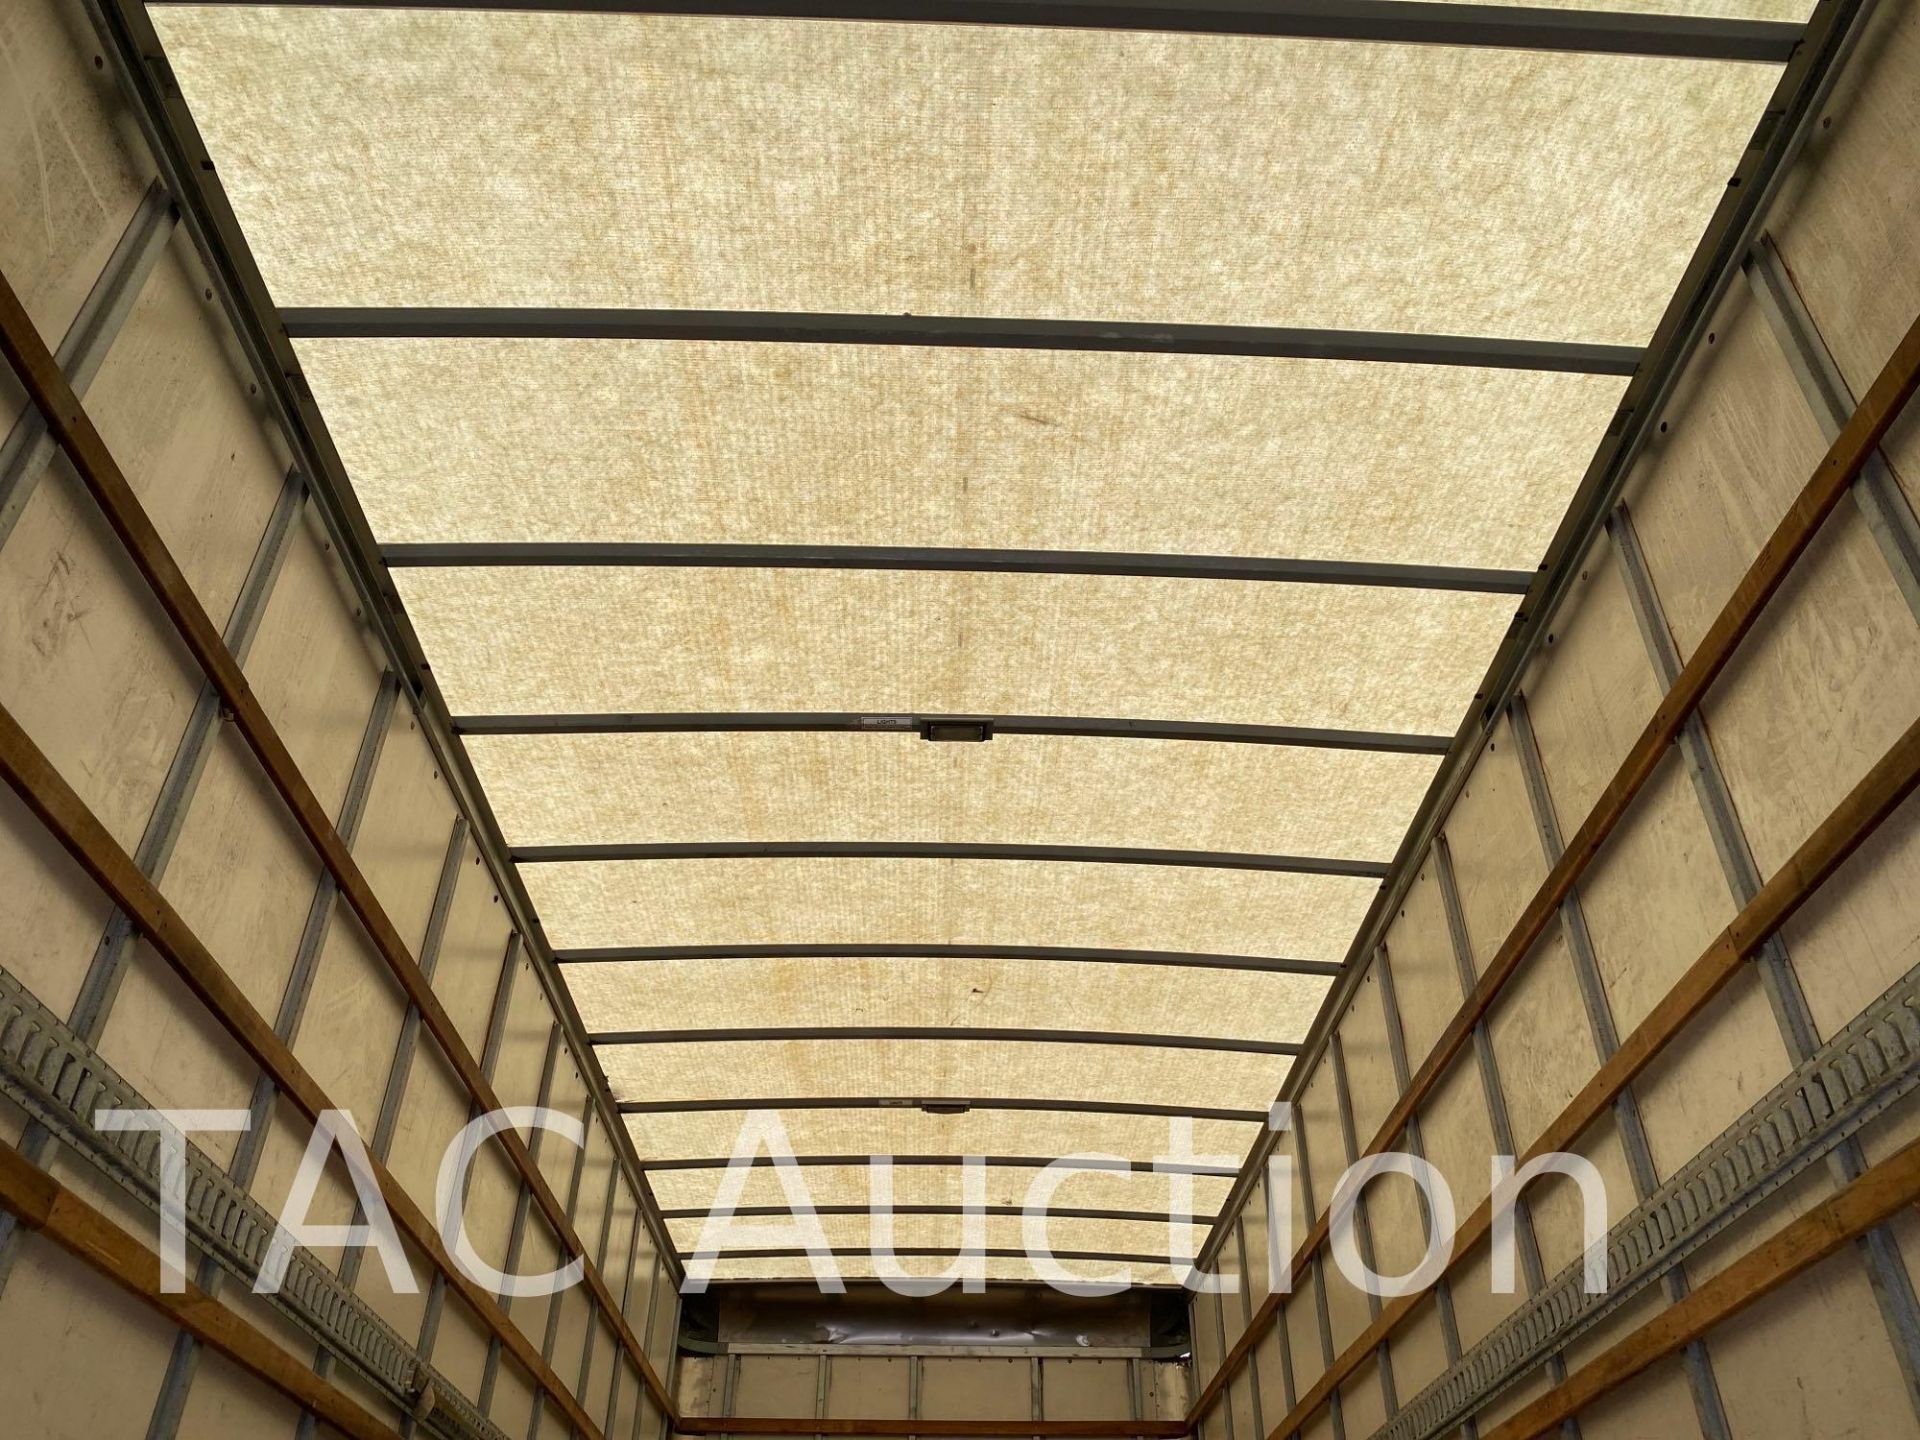 2017 Hino 268 26ft Box Truck - Image 16 of 59